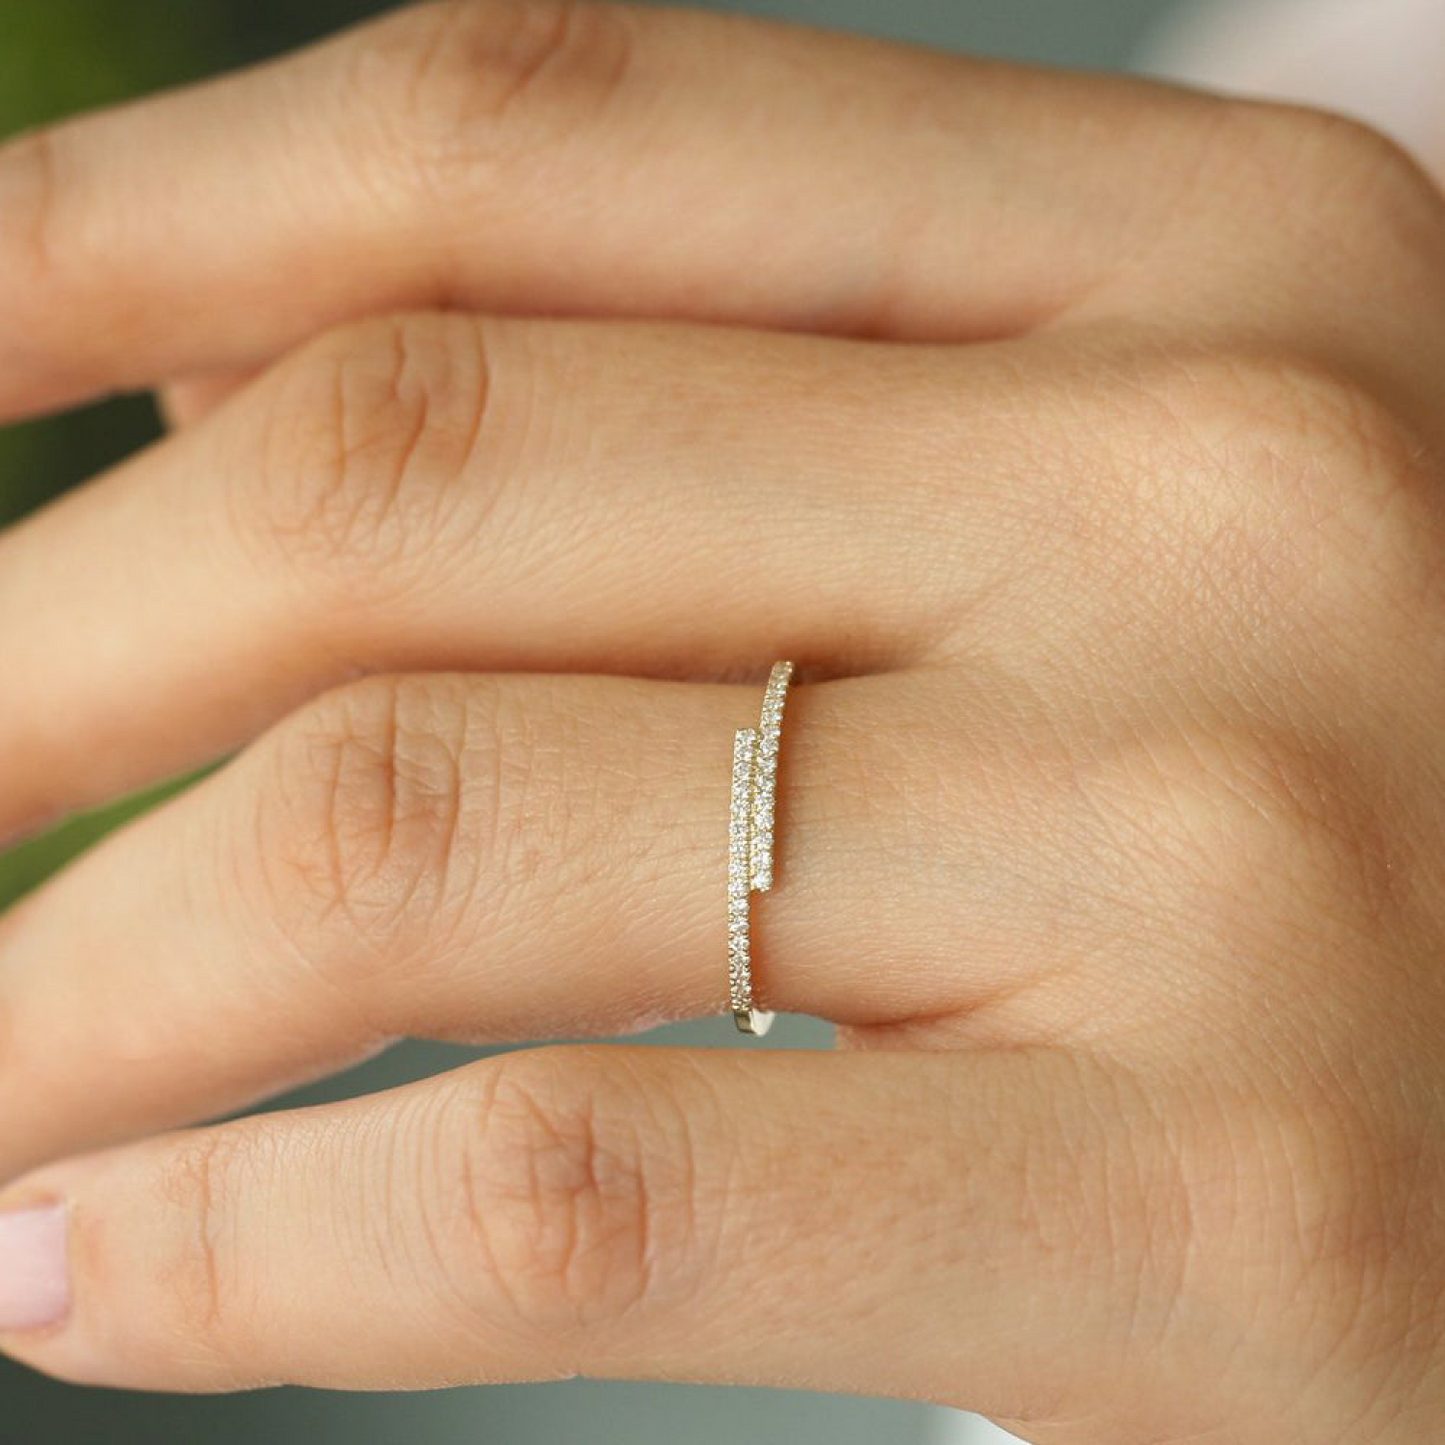 Warped Diamond Ring 24kdiamond